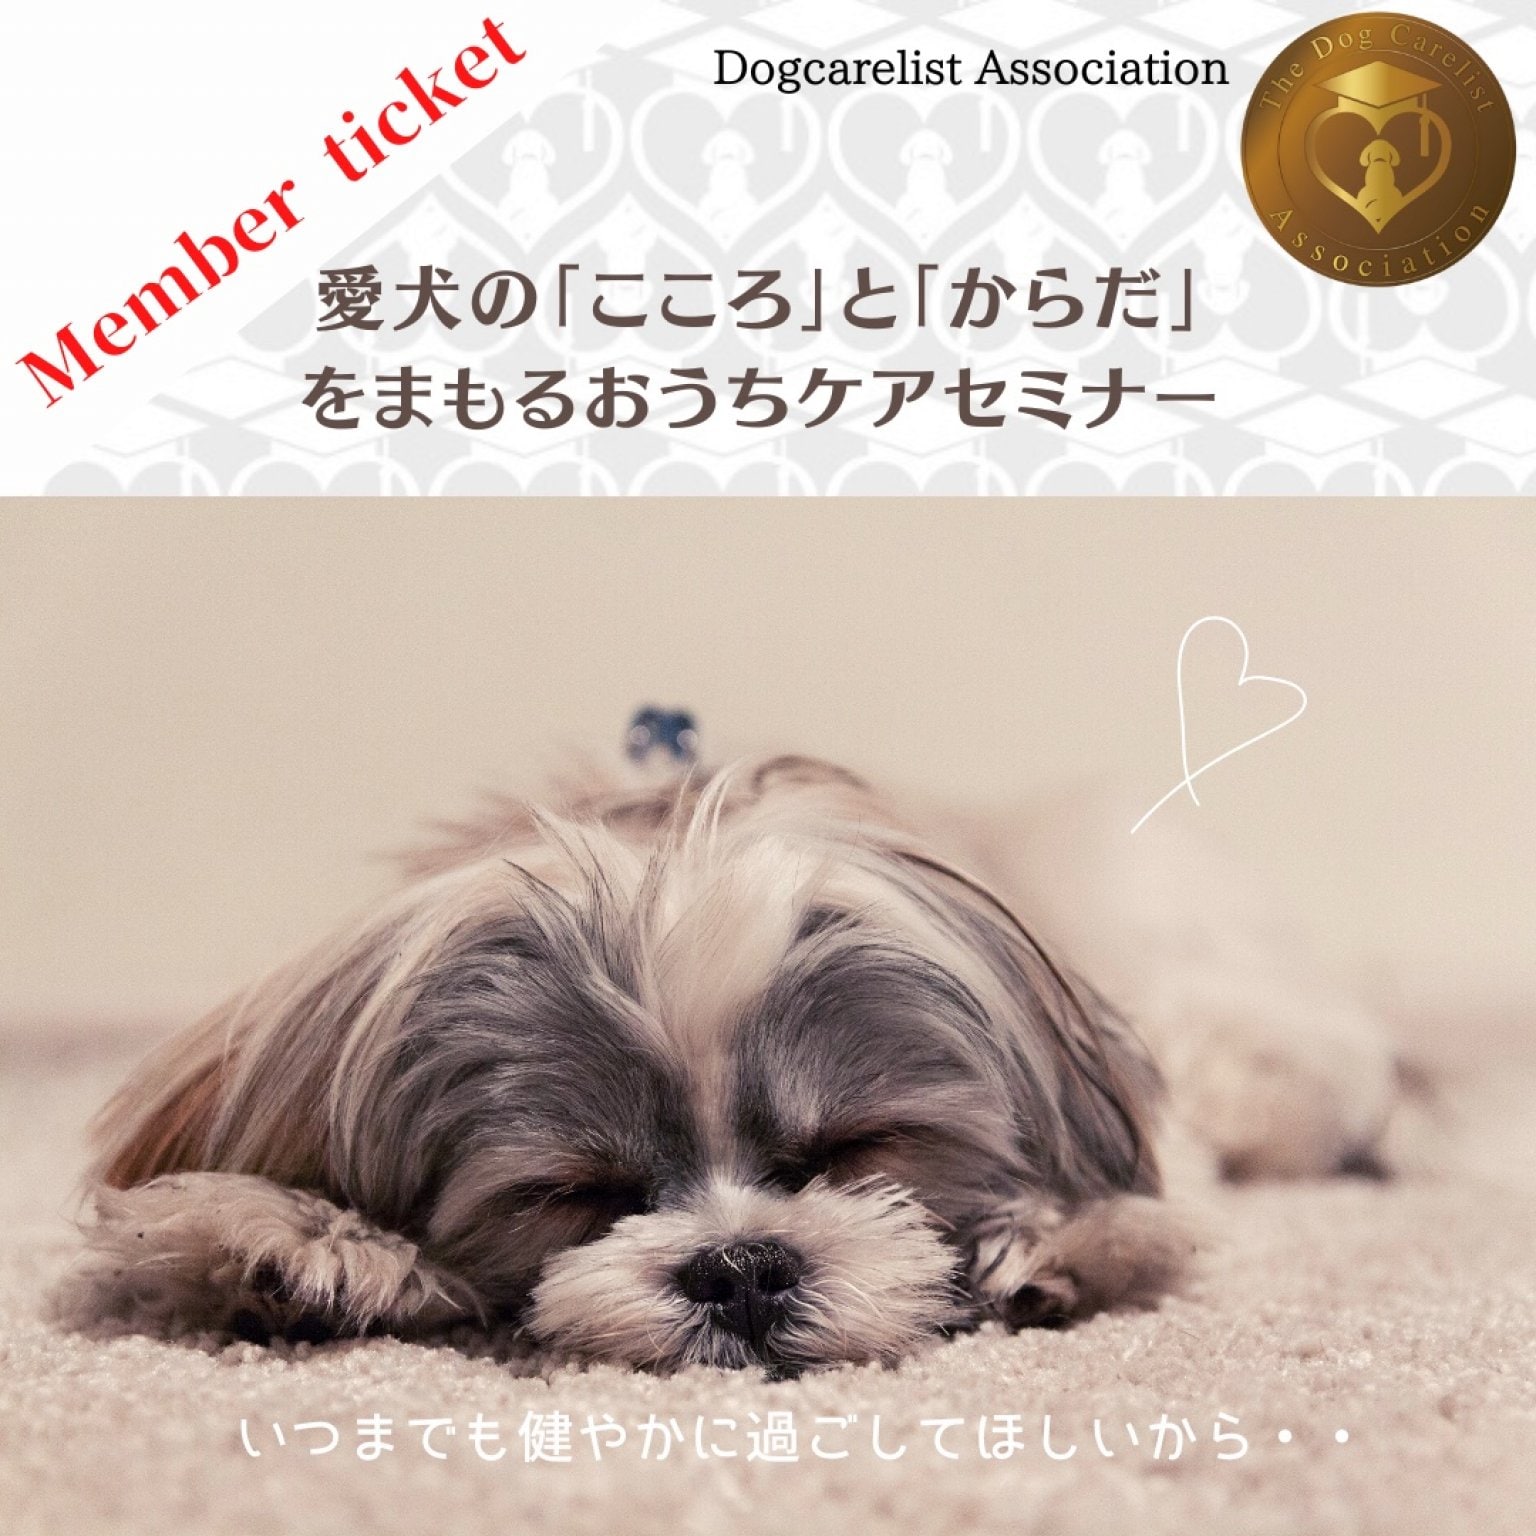 [メンバーチケット]2/22(木) ZOOM開催『愛犬の【こころ】と【からだ】の健康をまもるおうちケアセミナー』